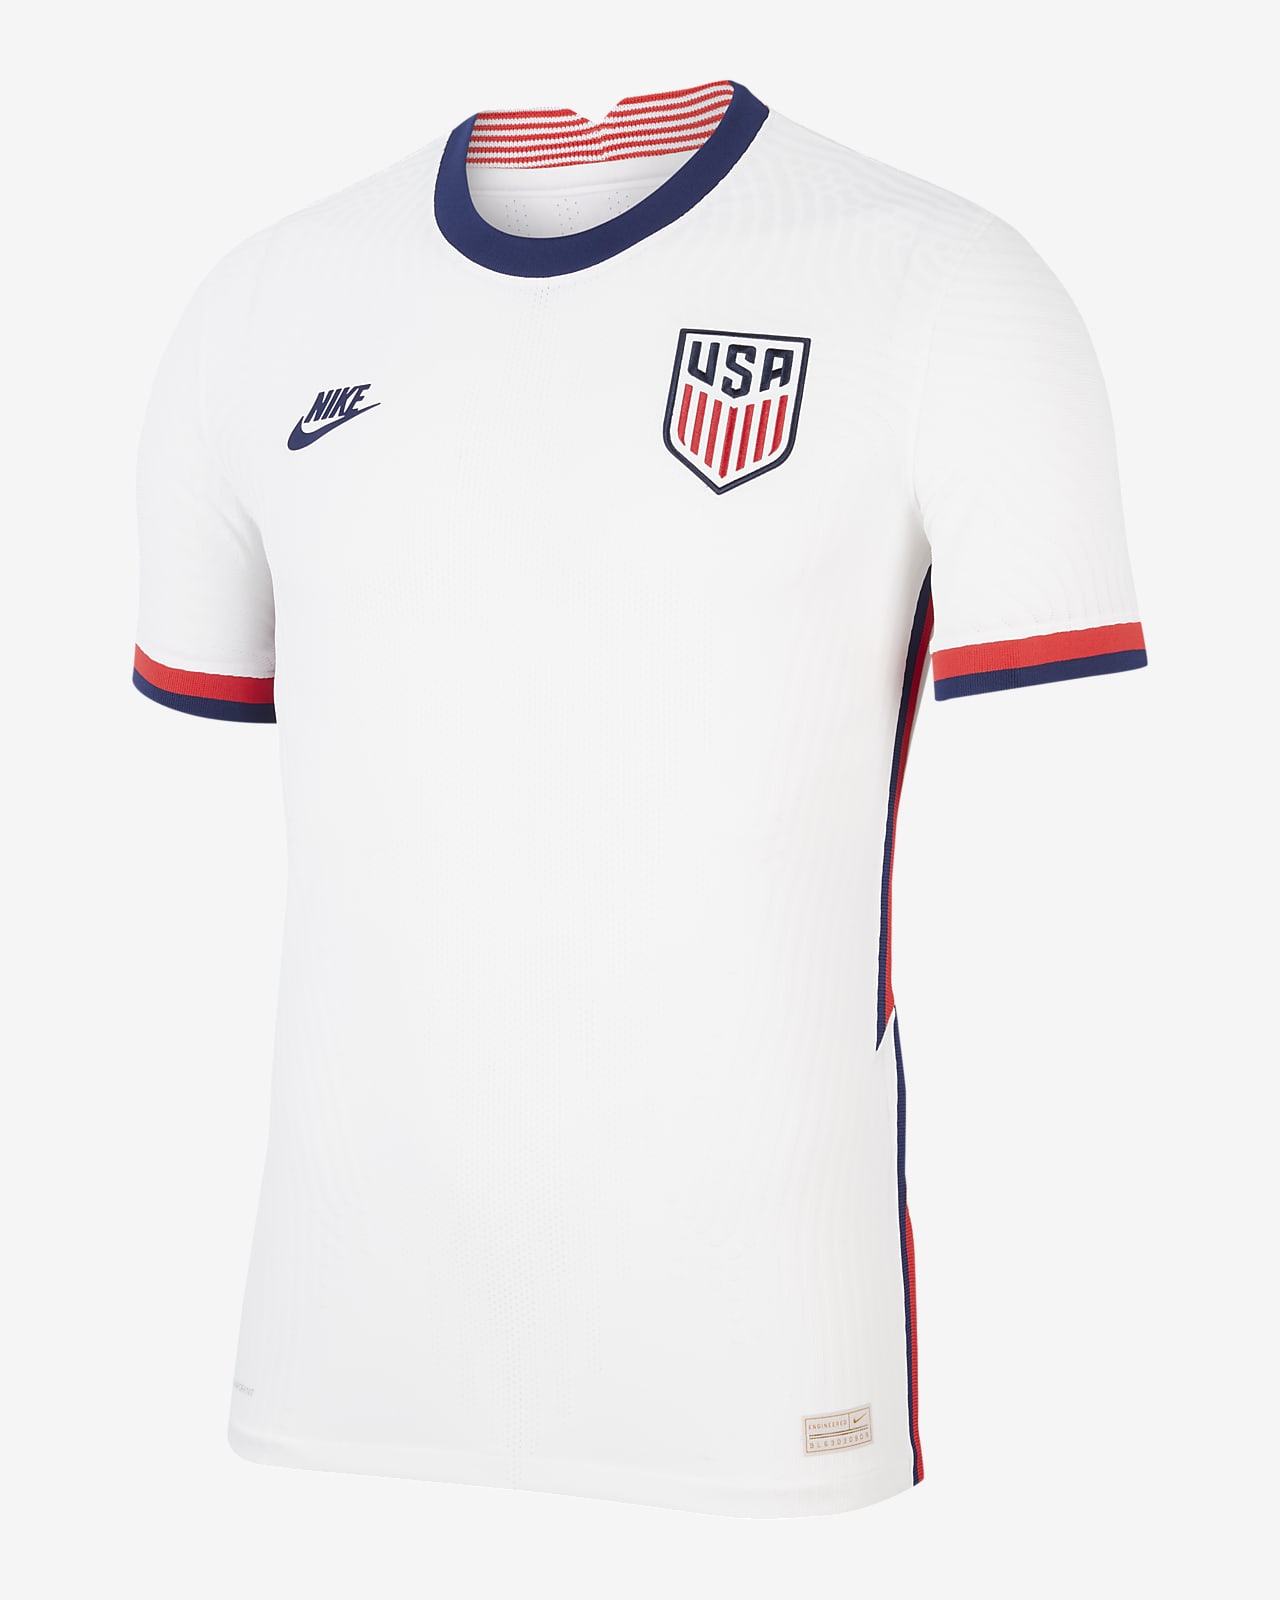 U.S. 2020 Vapor Match Home Men's Soccer Jersey